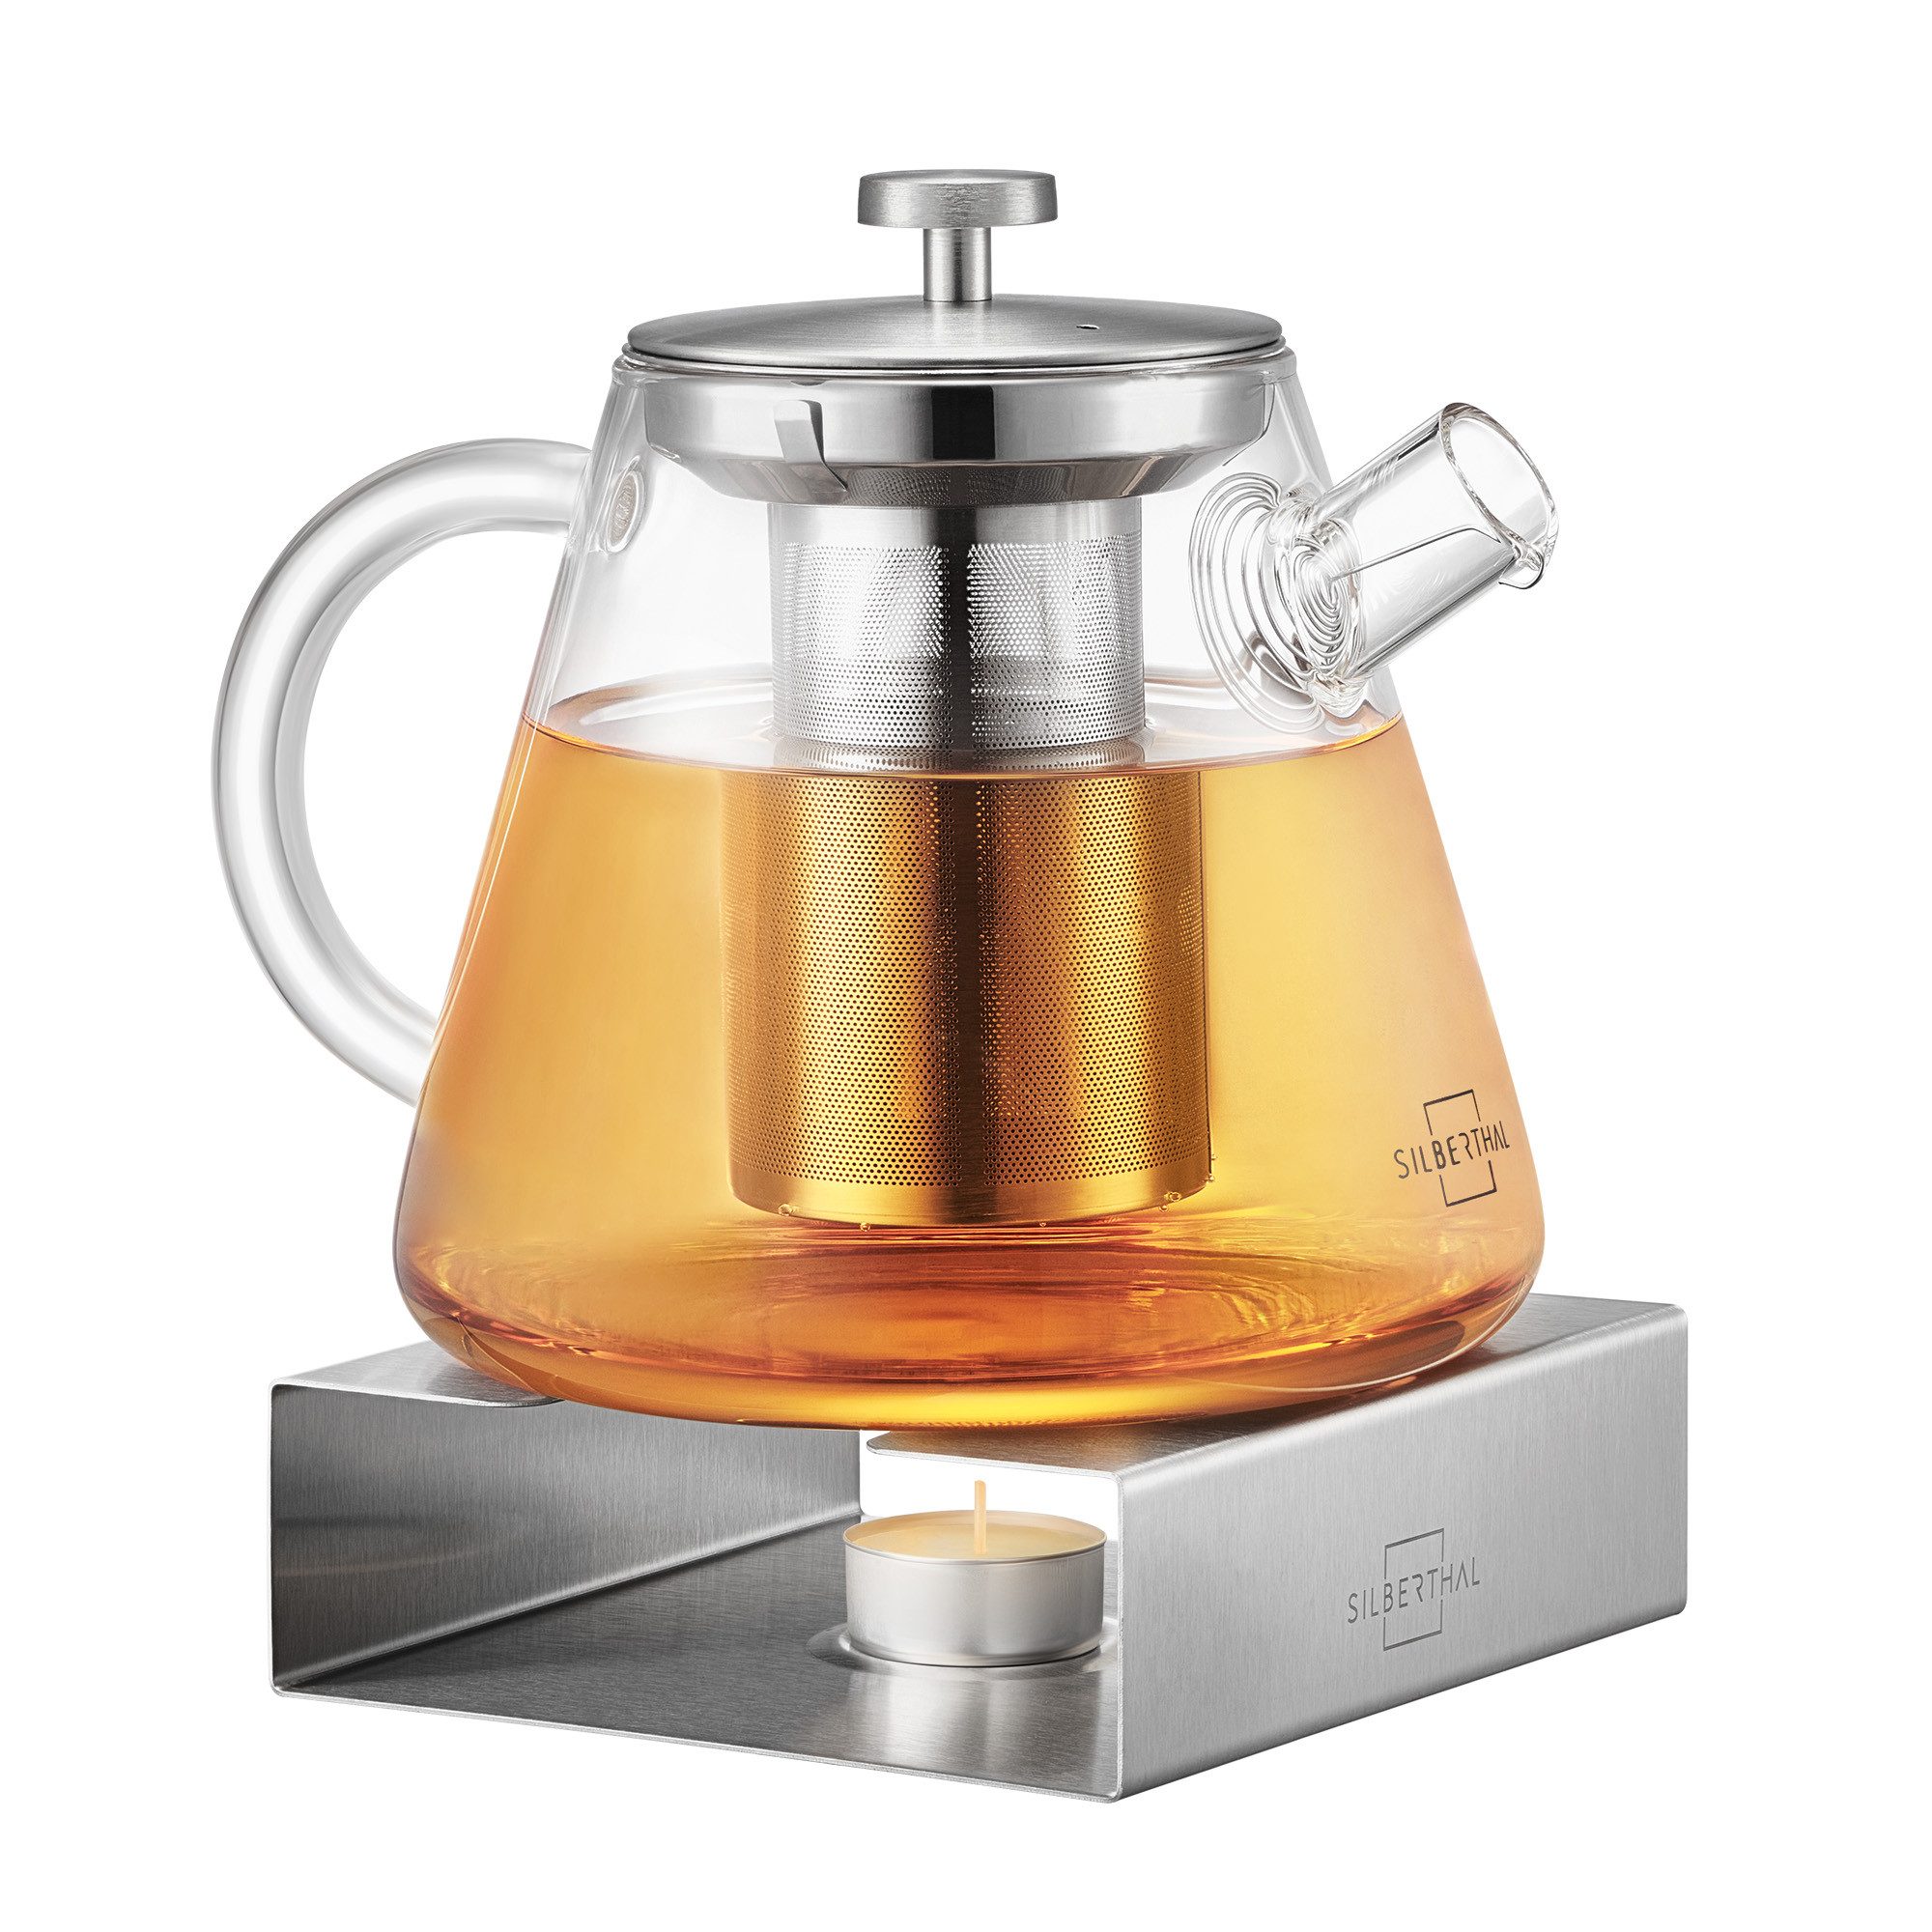 SILBERTHAL Teekanne mit Stövchen Set, 1.5 l, (Kanne Glas mit Siebeinsatz und Teewärmer), Teelichthalter für stundenlangen Teegenuss